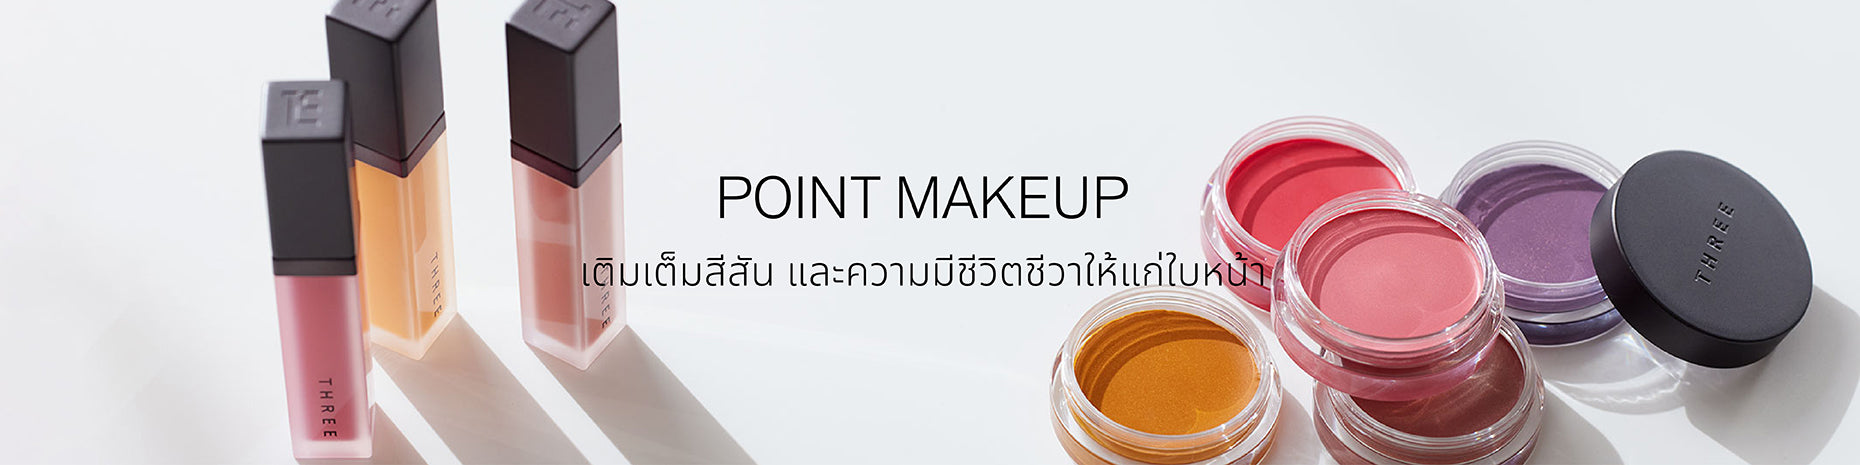 Point makeup